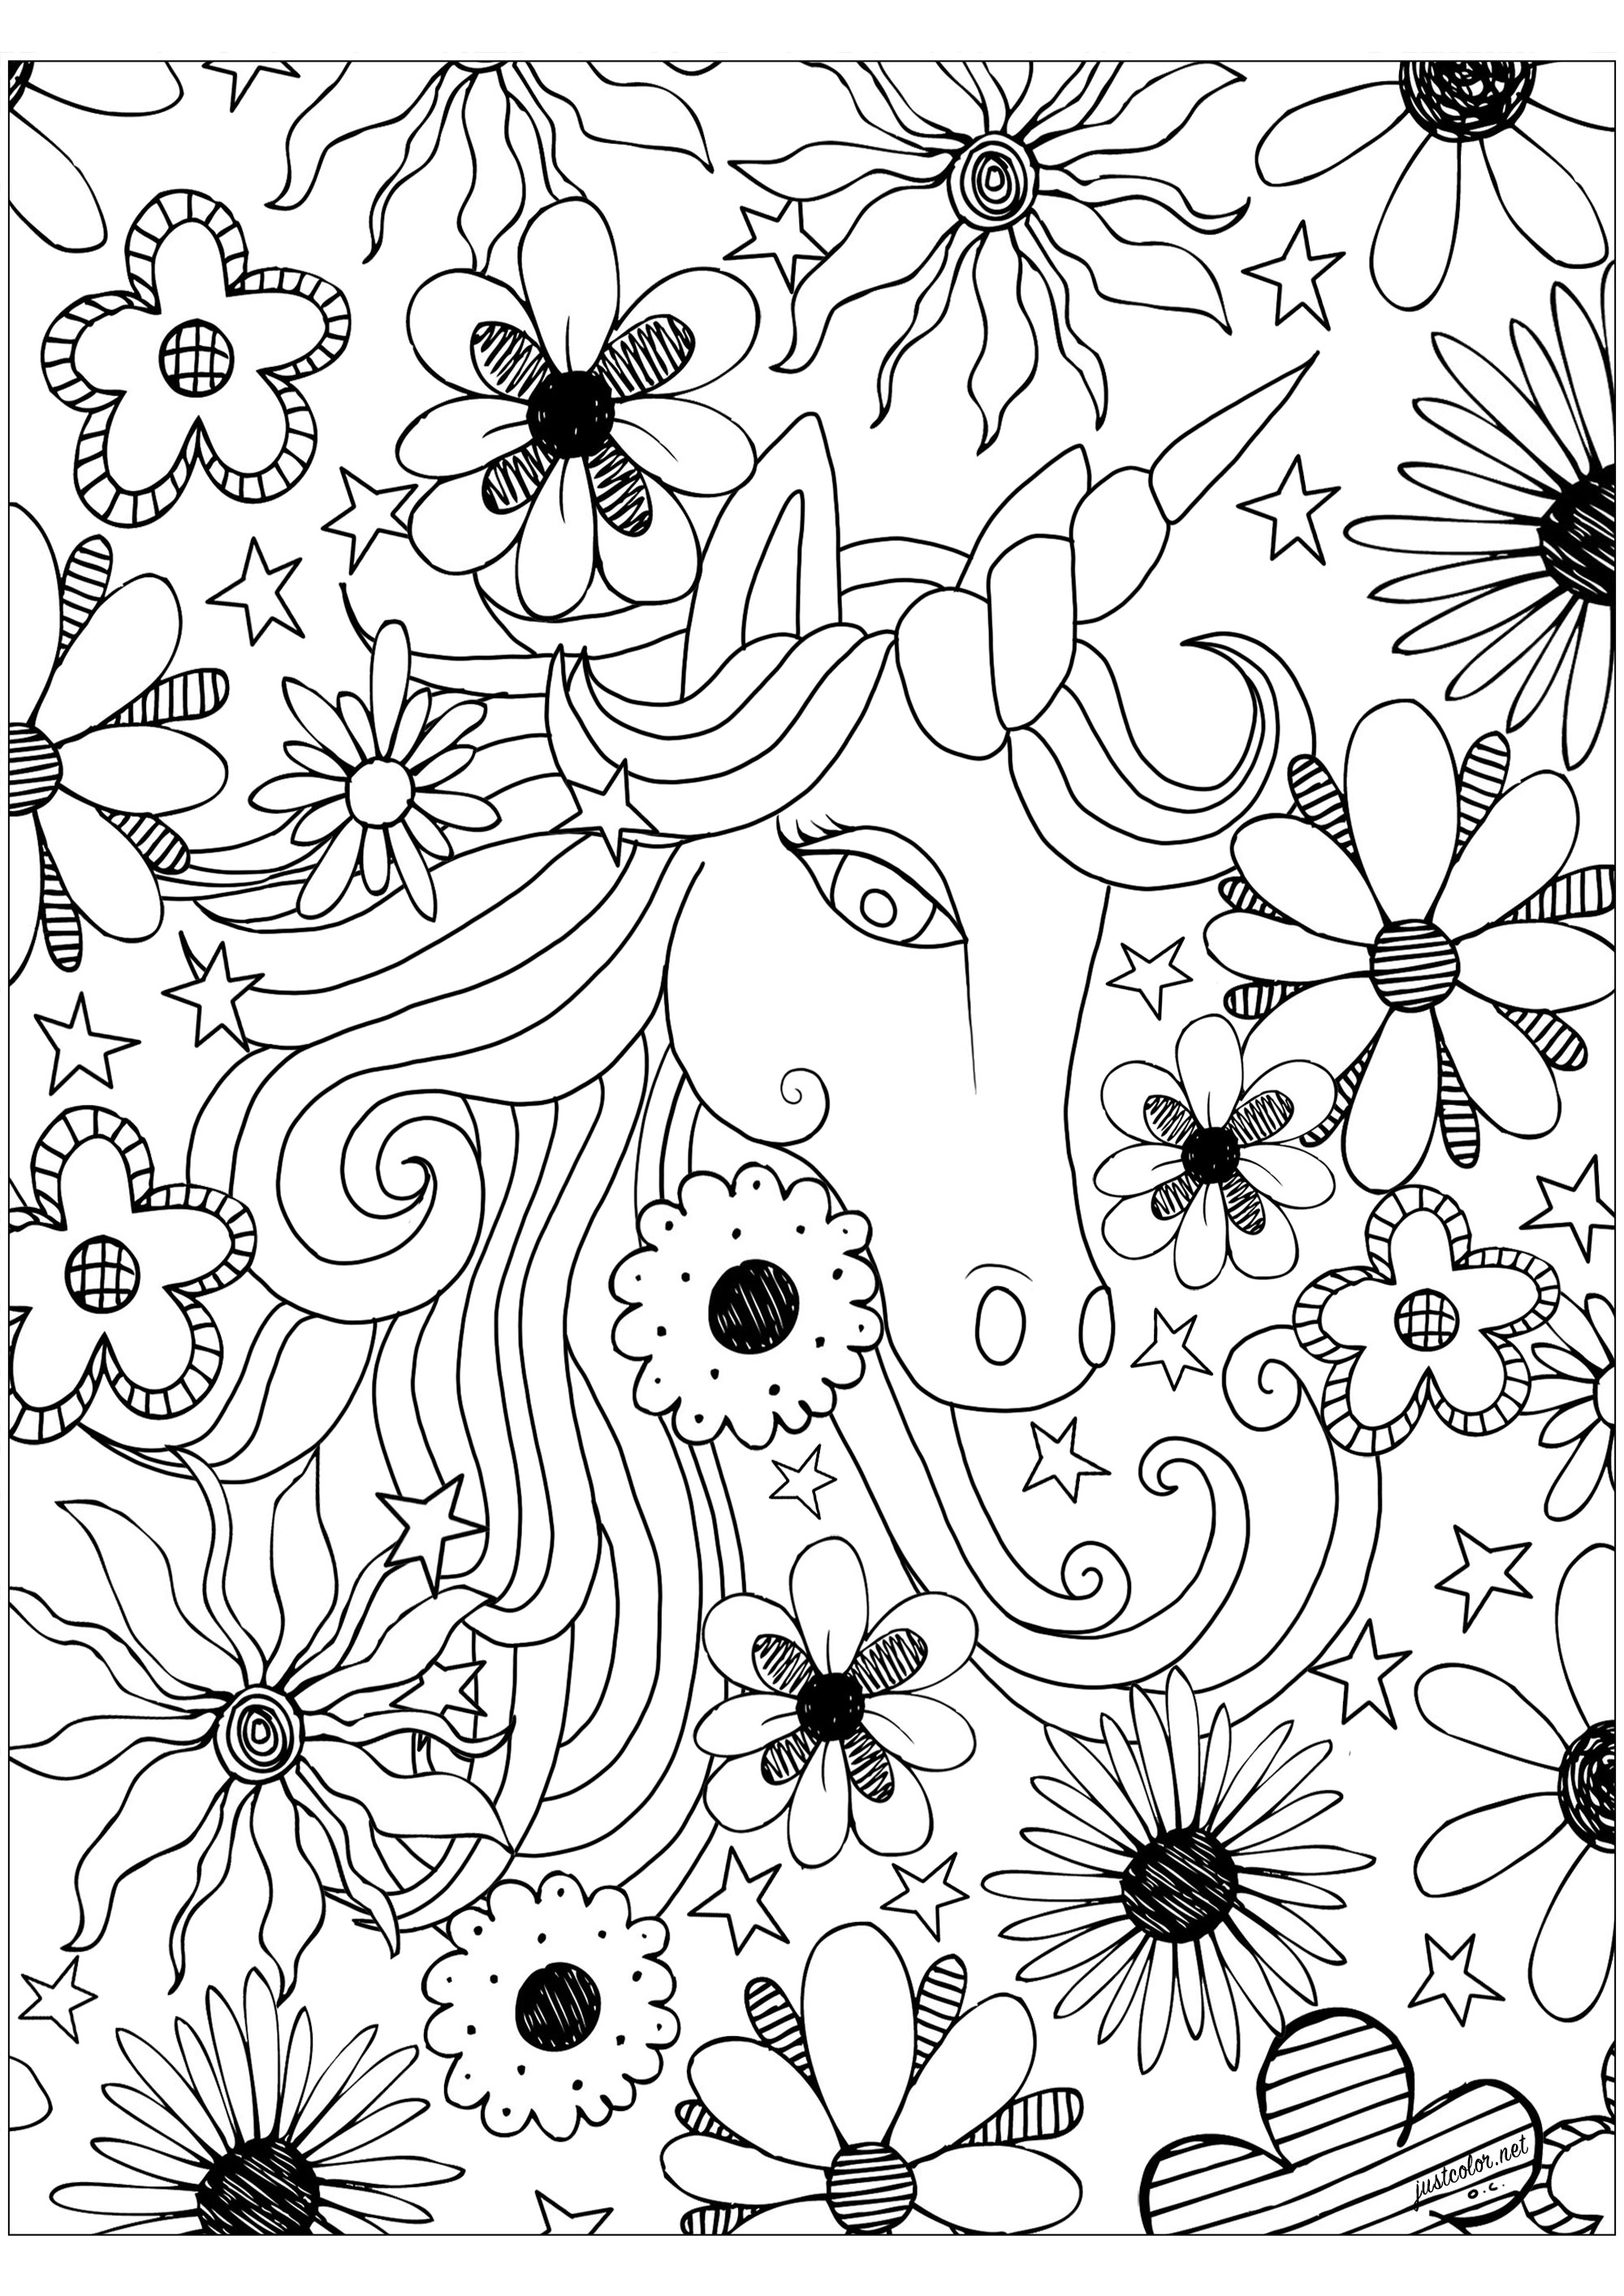 Hübsches Einhorn mit vielen verschiedenen Blumen, die es umgeben.  Einhorn gezeichnet von Olivier, Blumen von MPC Design